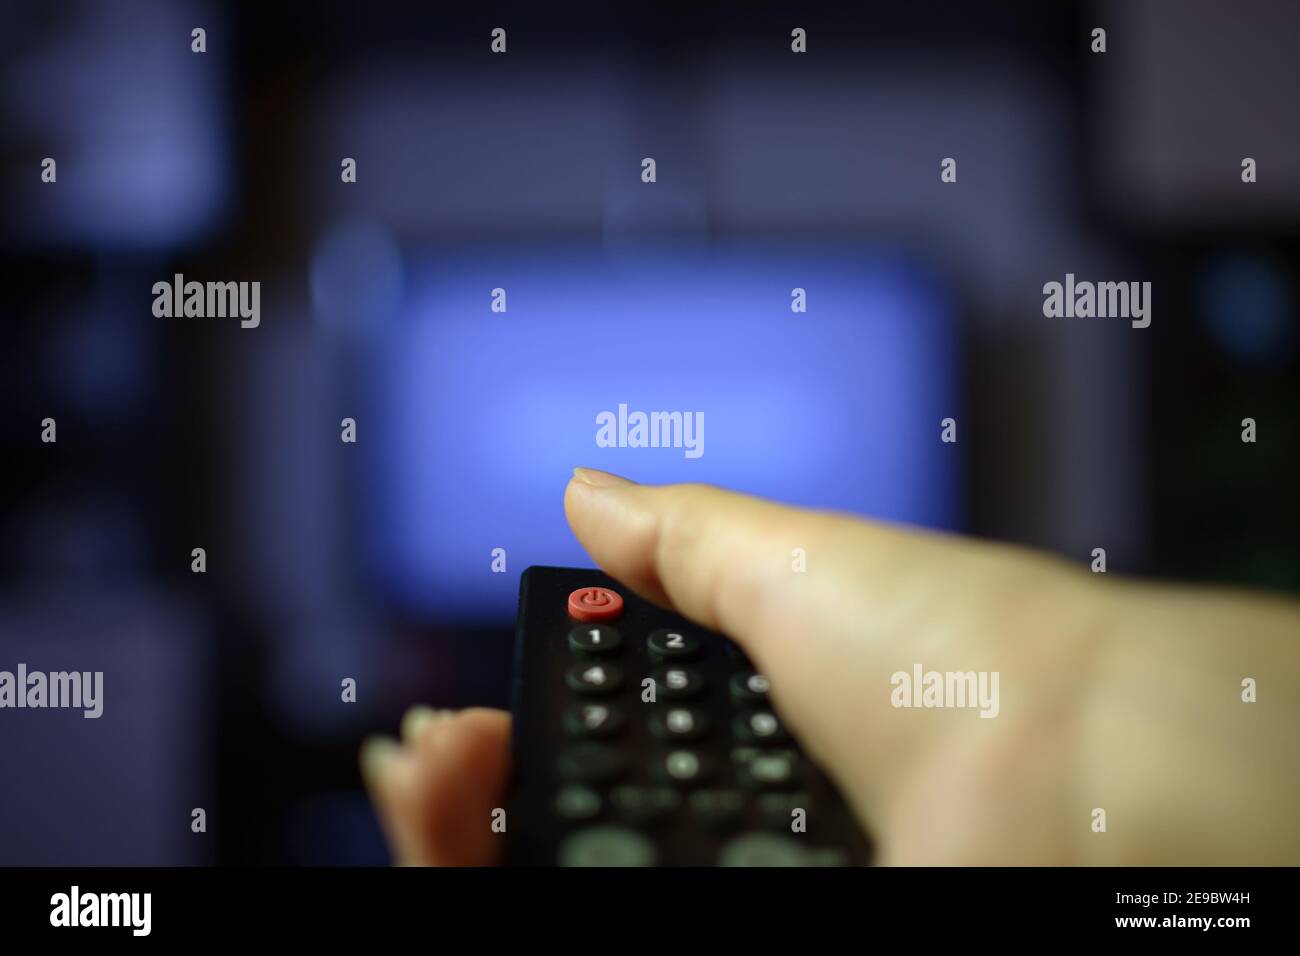 Die Hand hält die Fernbedienung und schaltet den Fernseher ein Mit  Störungen Stockfotografie - Alamy